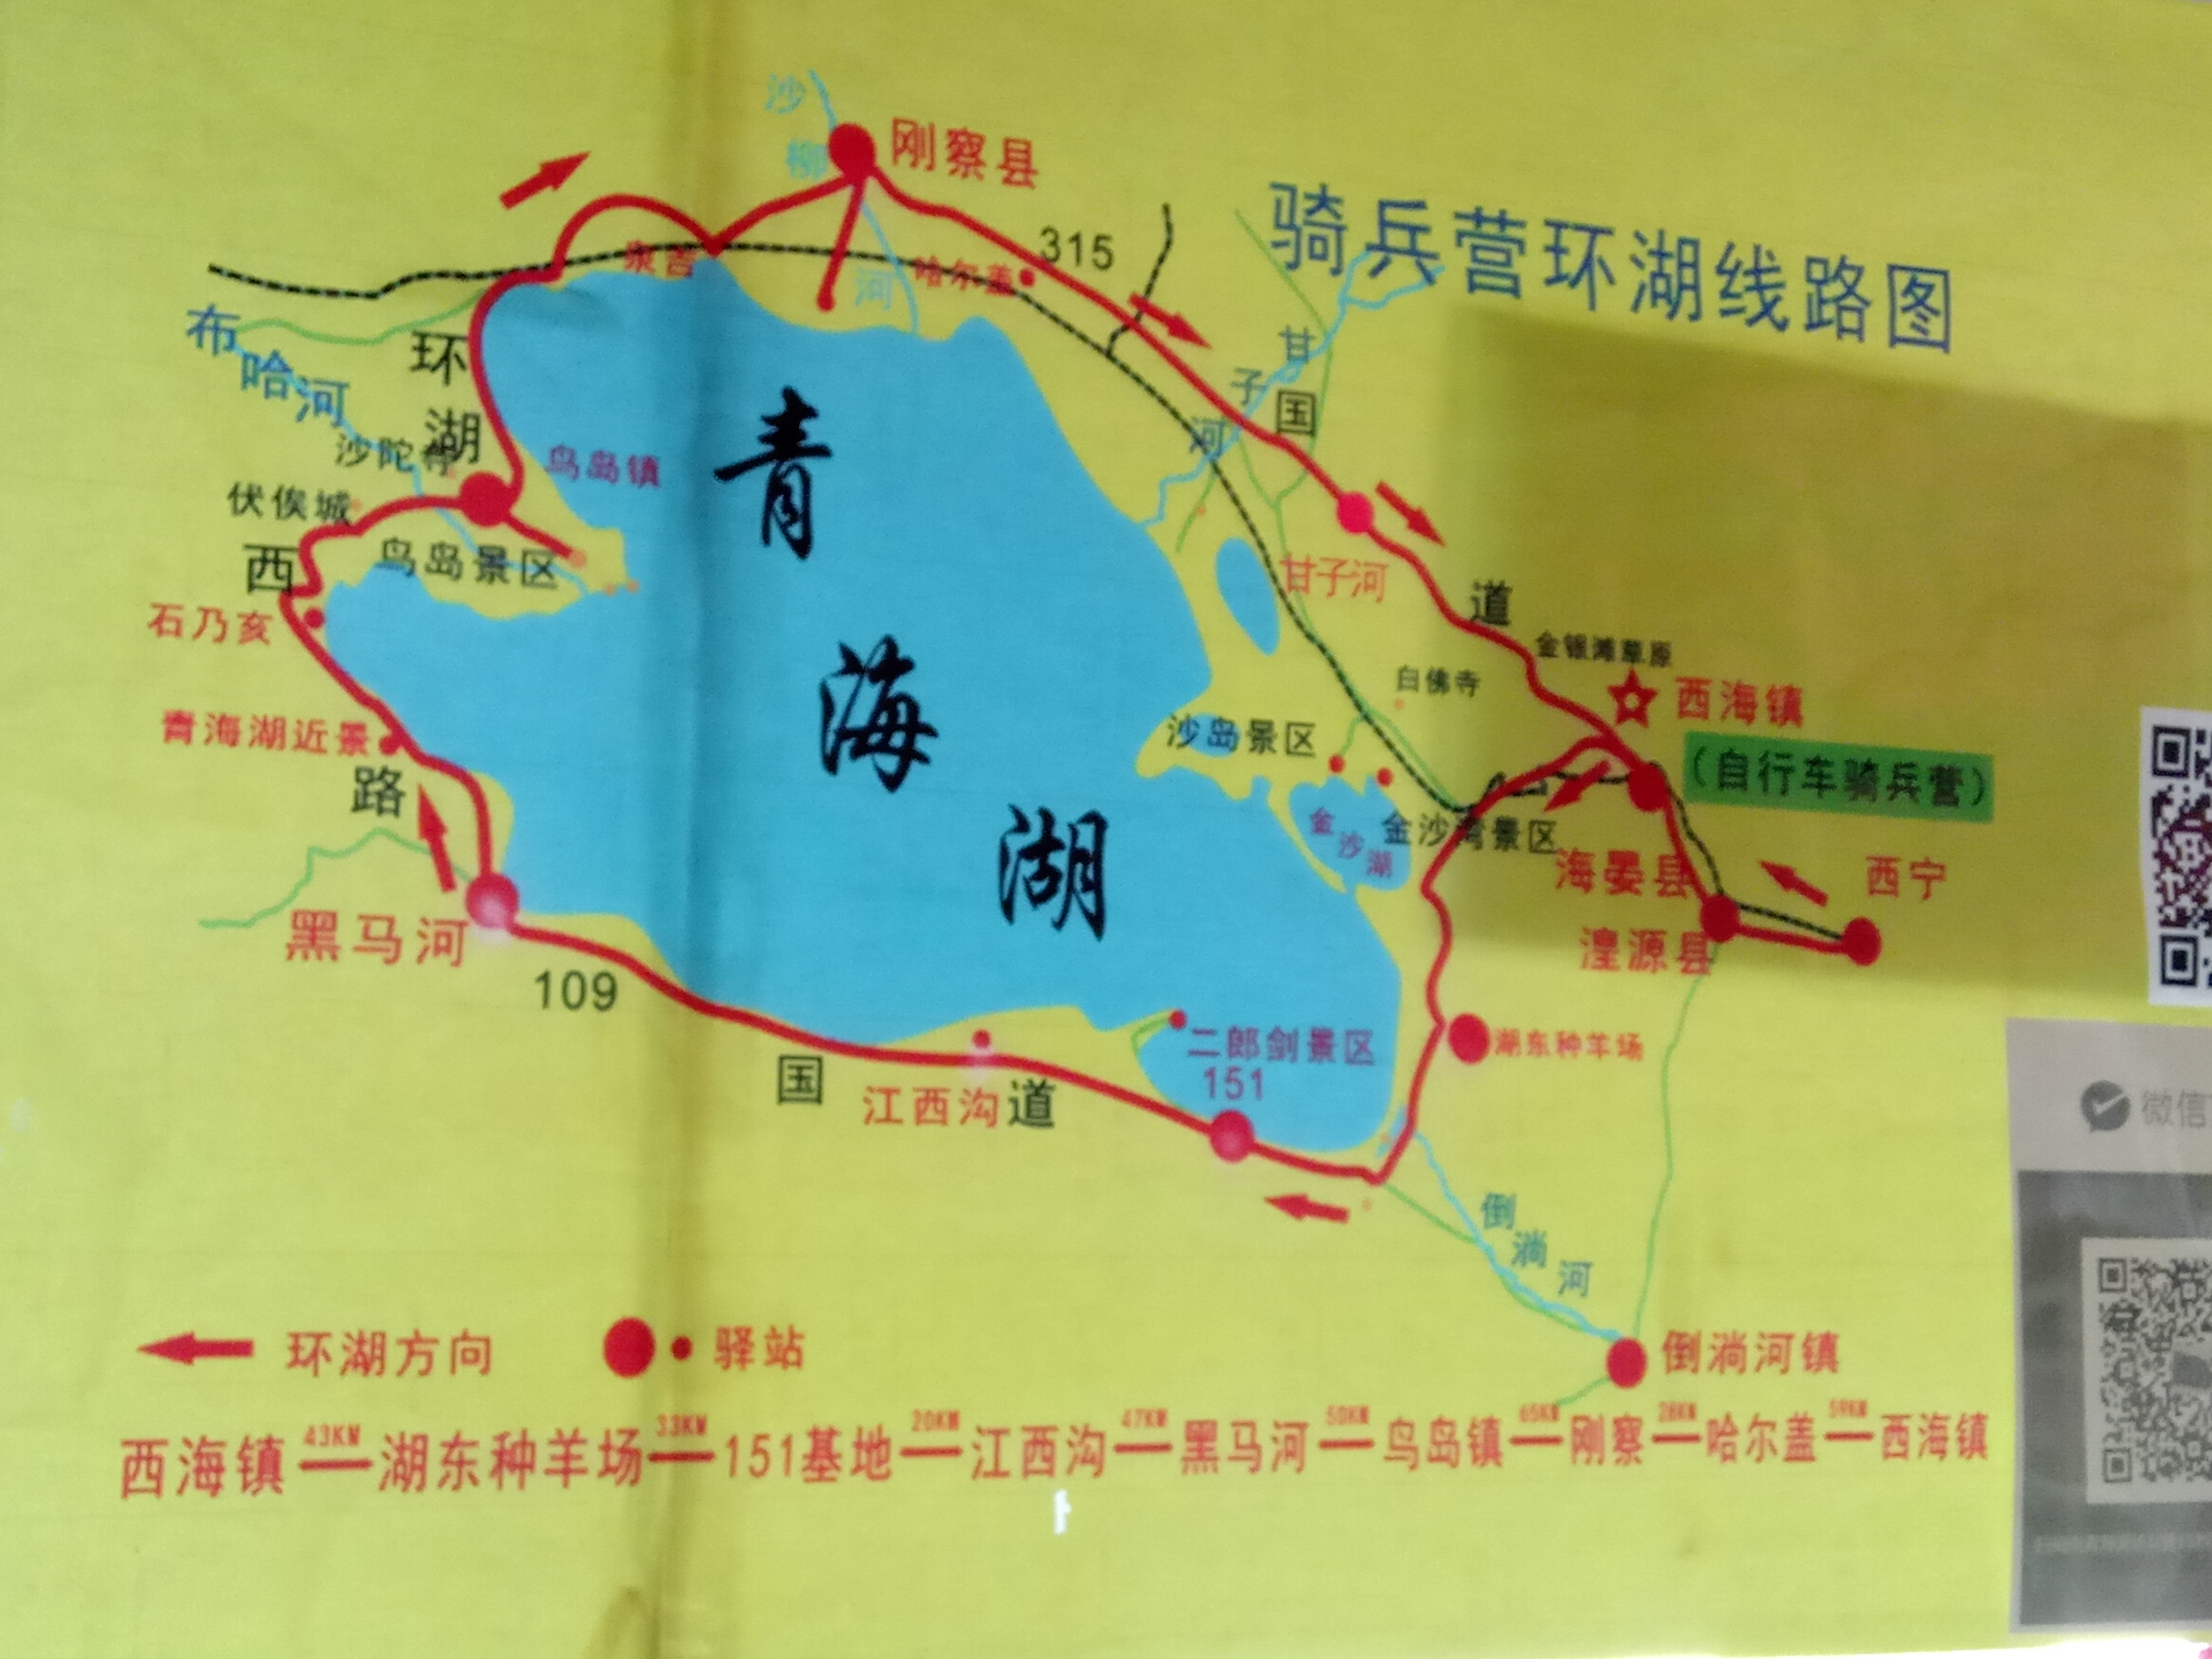 去青海湖旅游成为当下都市人出游休闲首选的首选线路